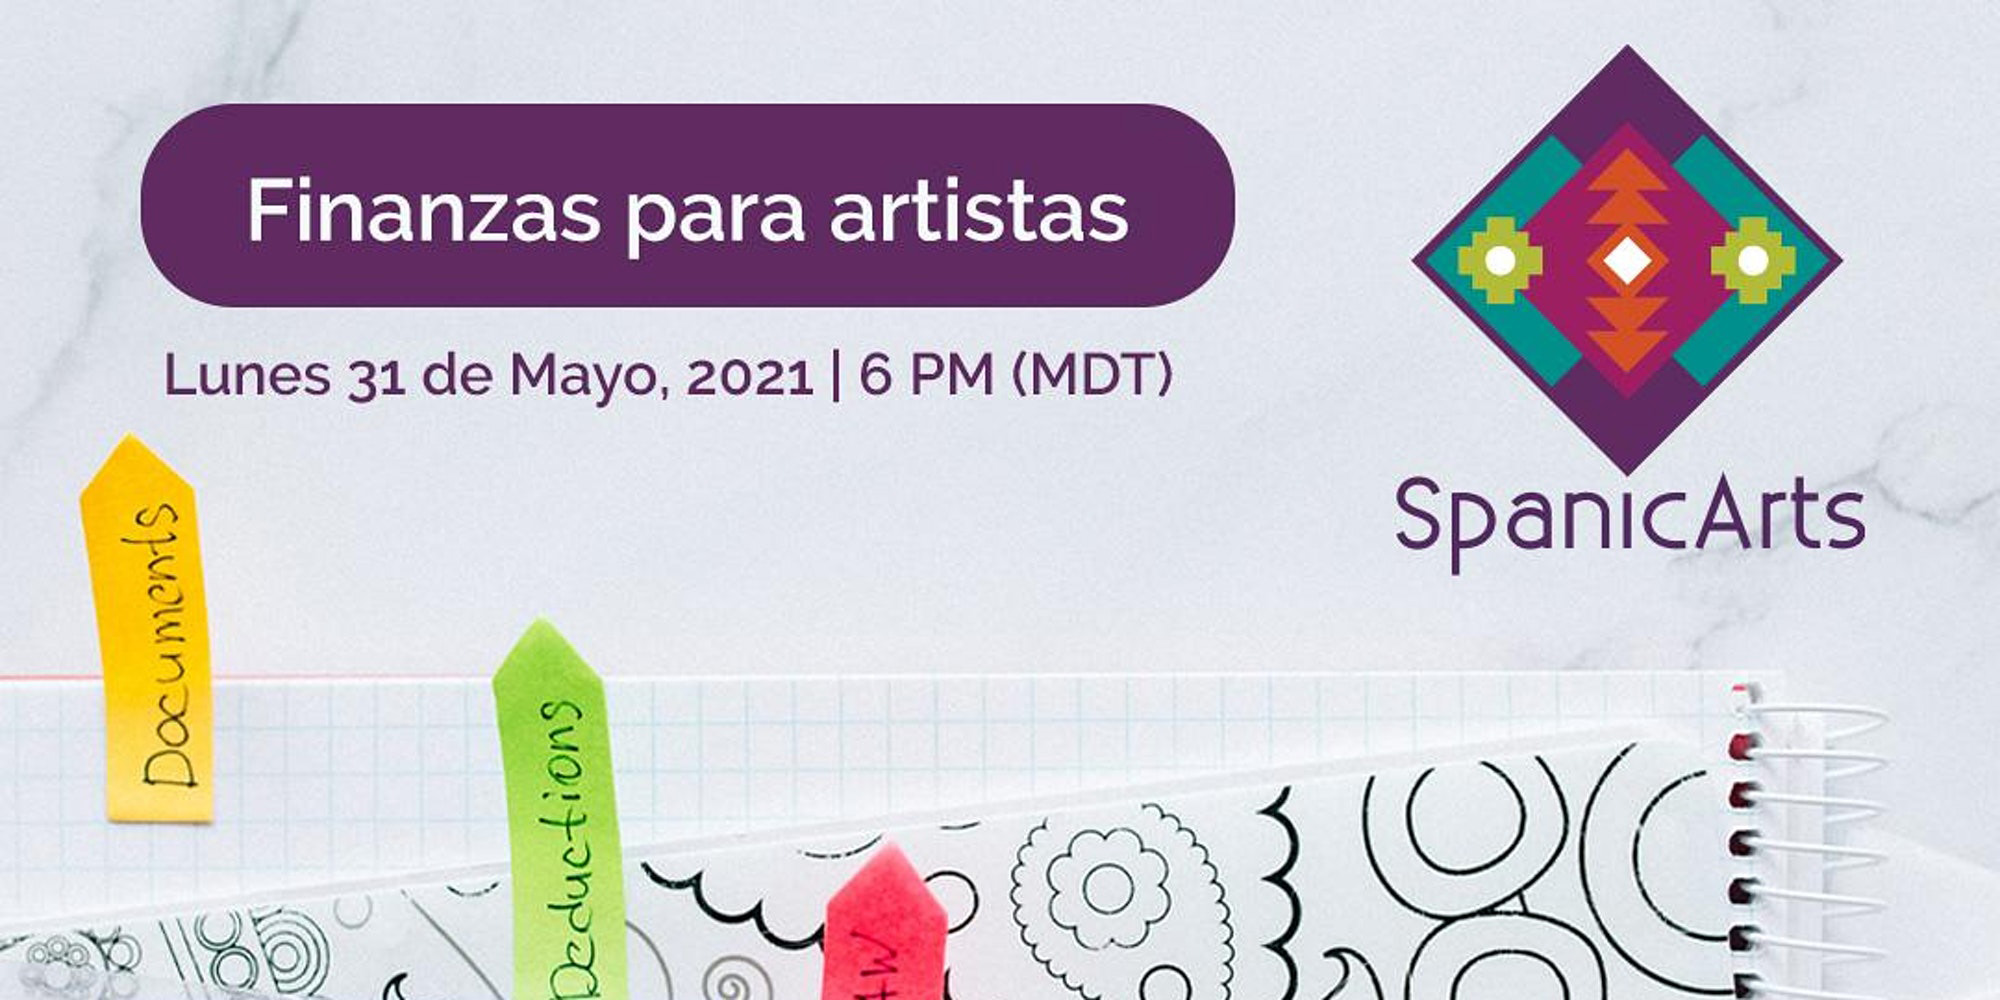 A graphic for Finanzas para Artistas with SpanicArts